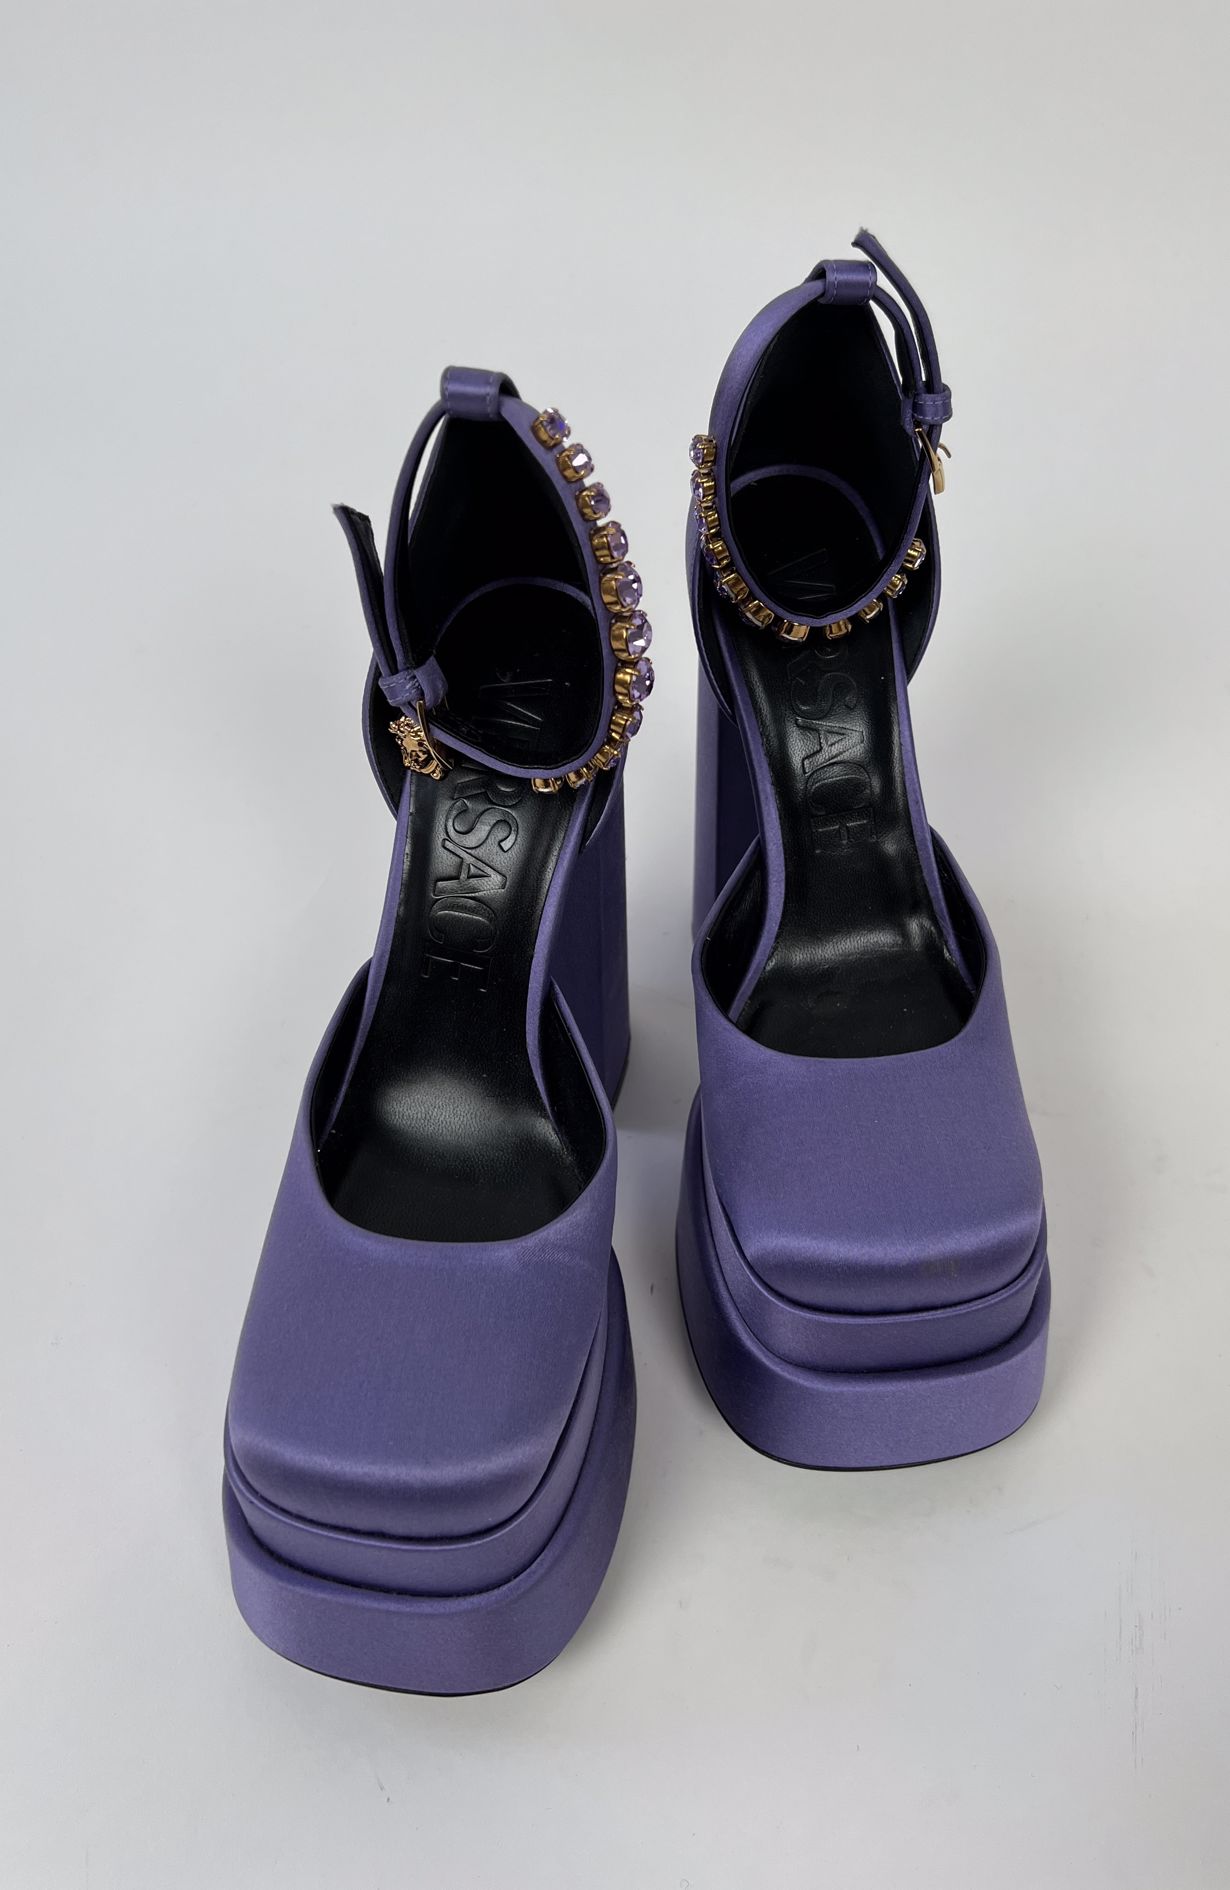 Versace Medusa heels size 37,5